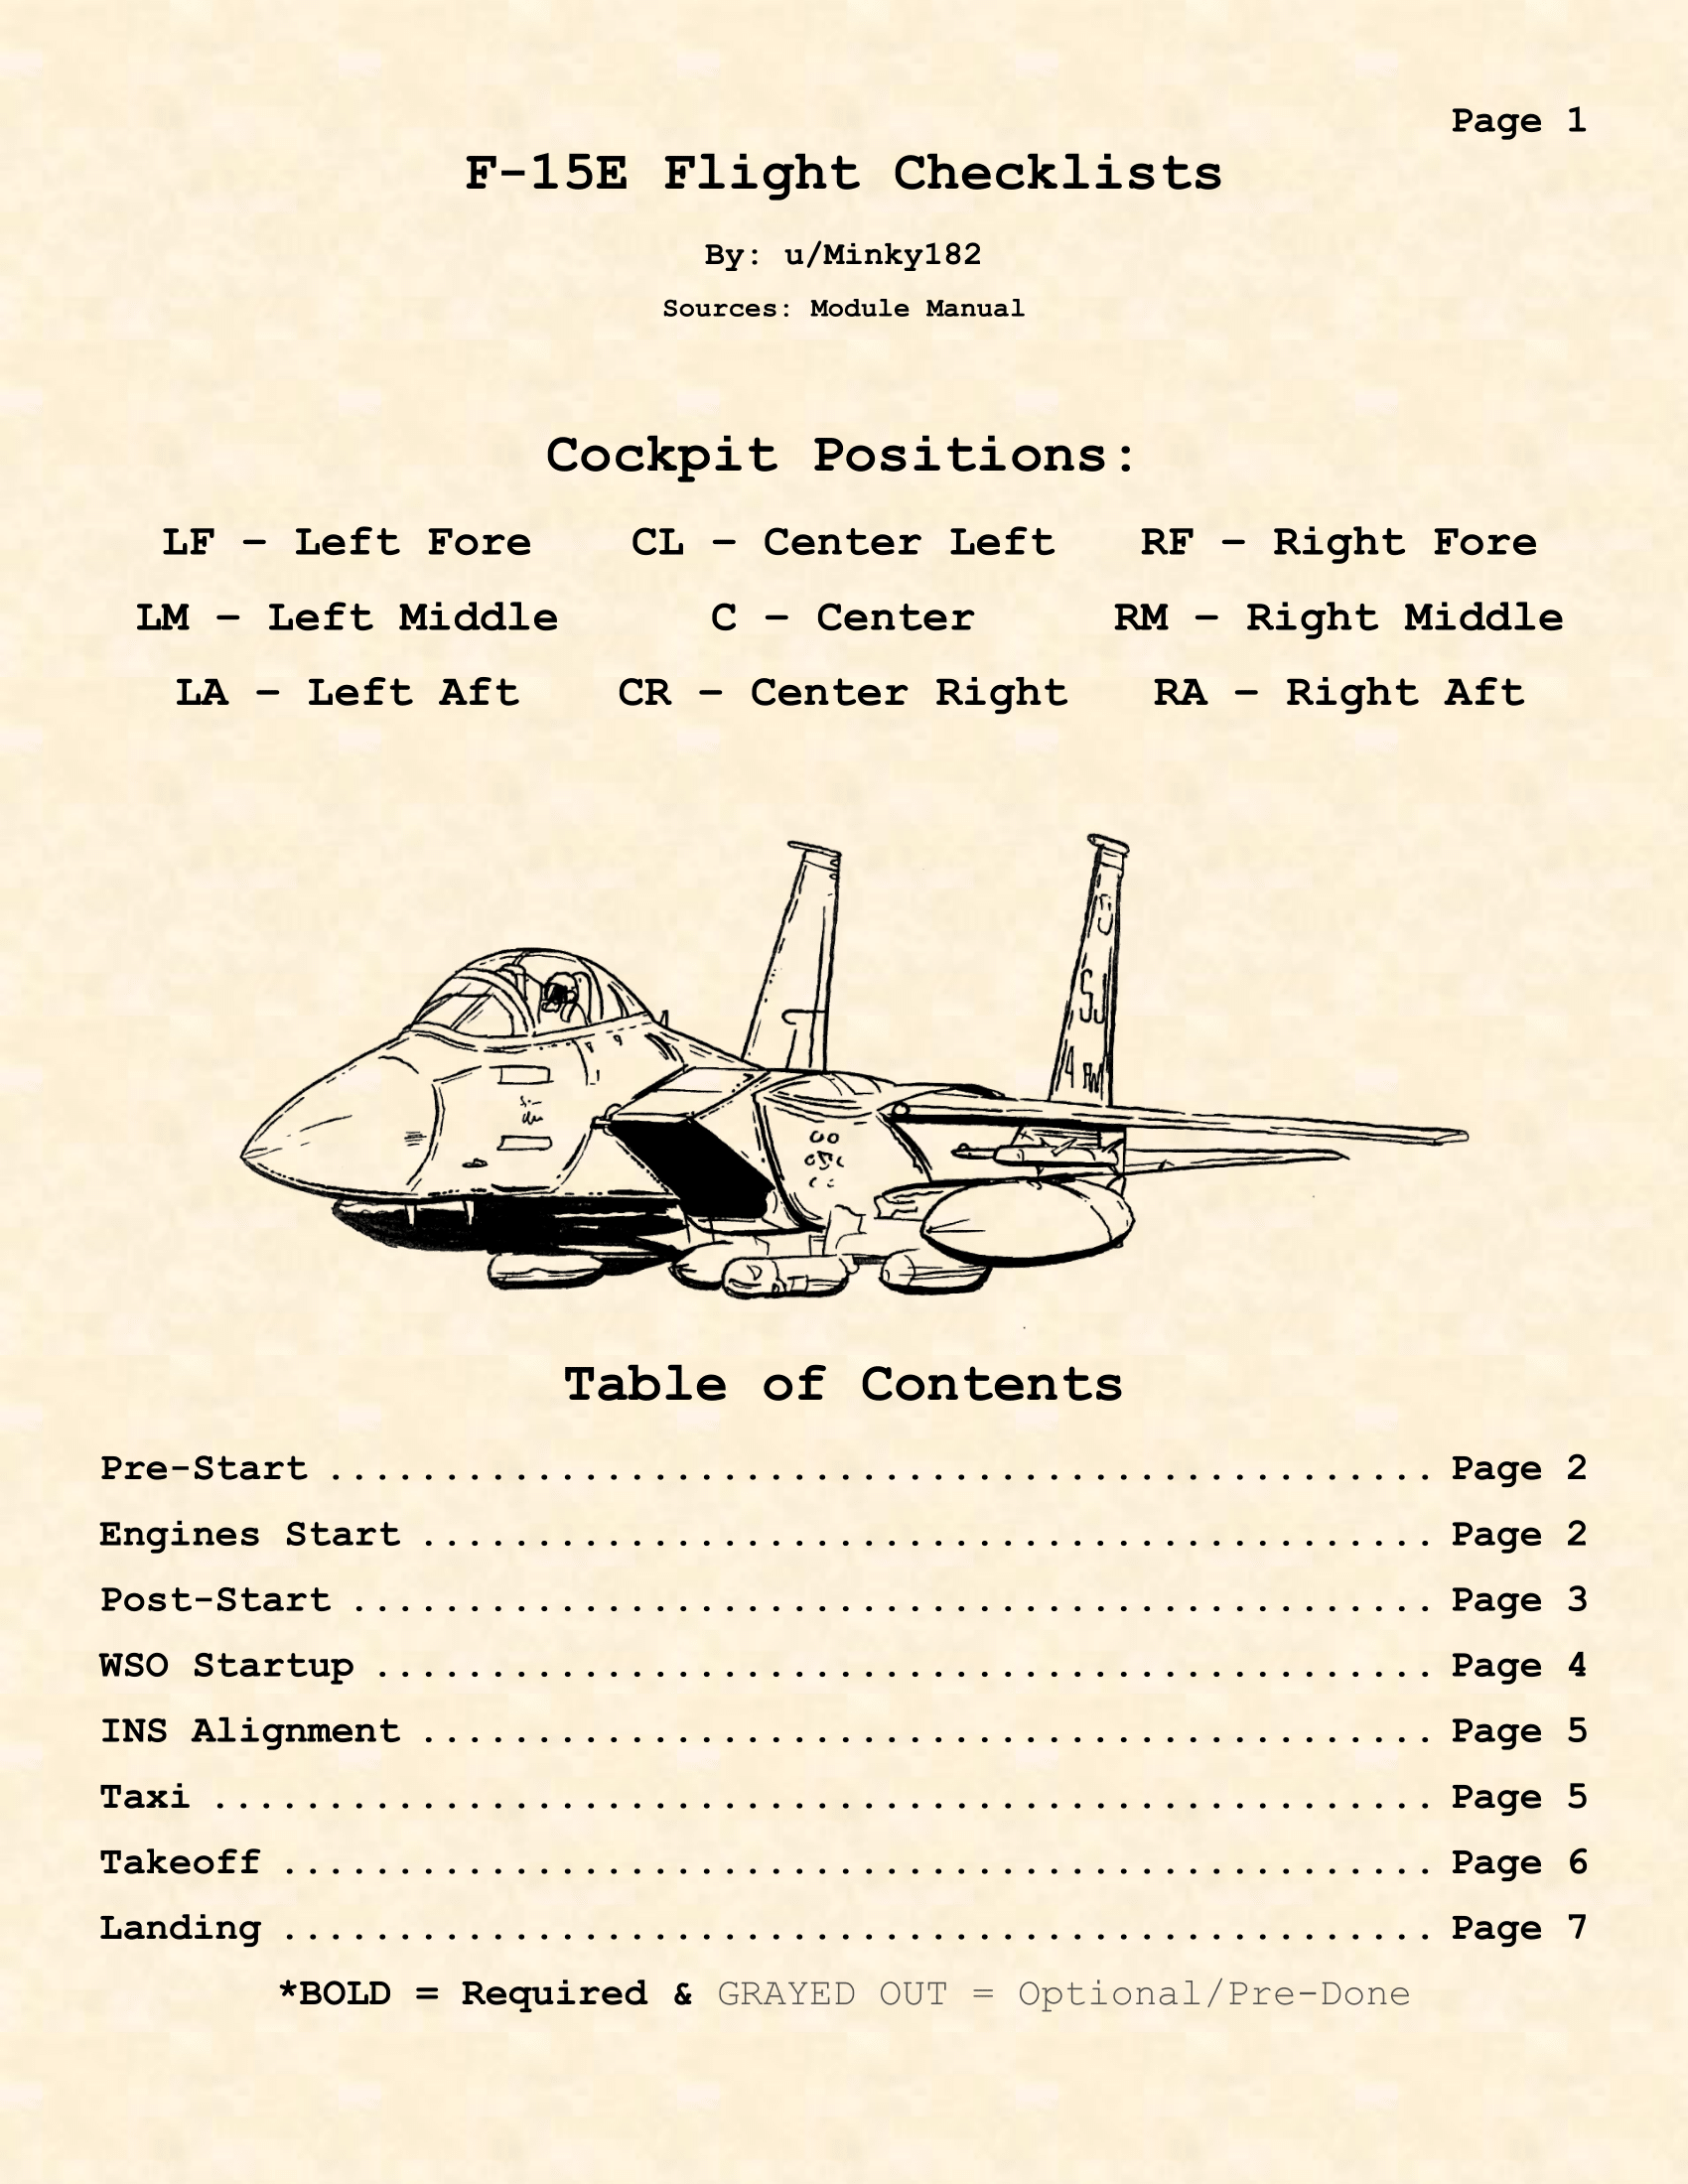 F-15E Kneeboard Checklists